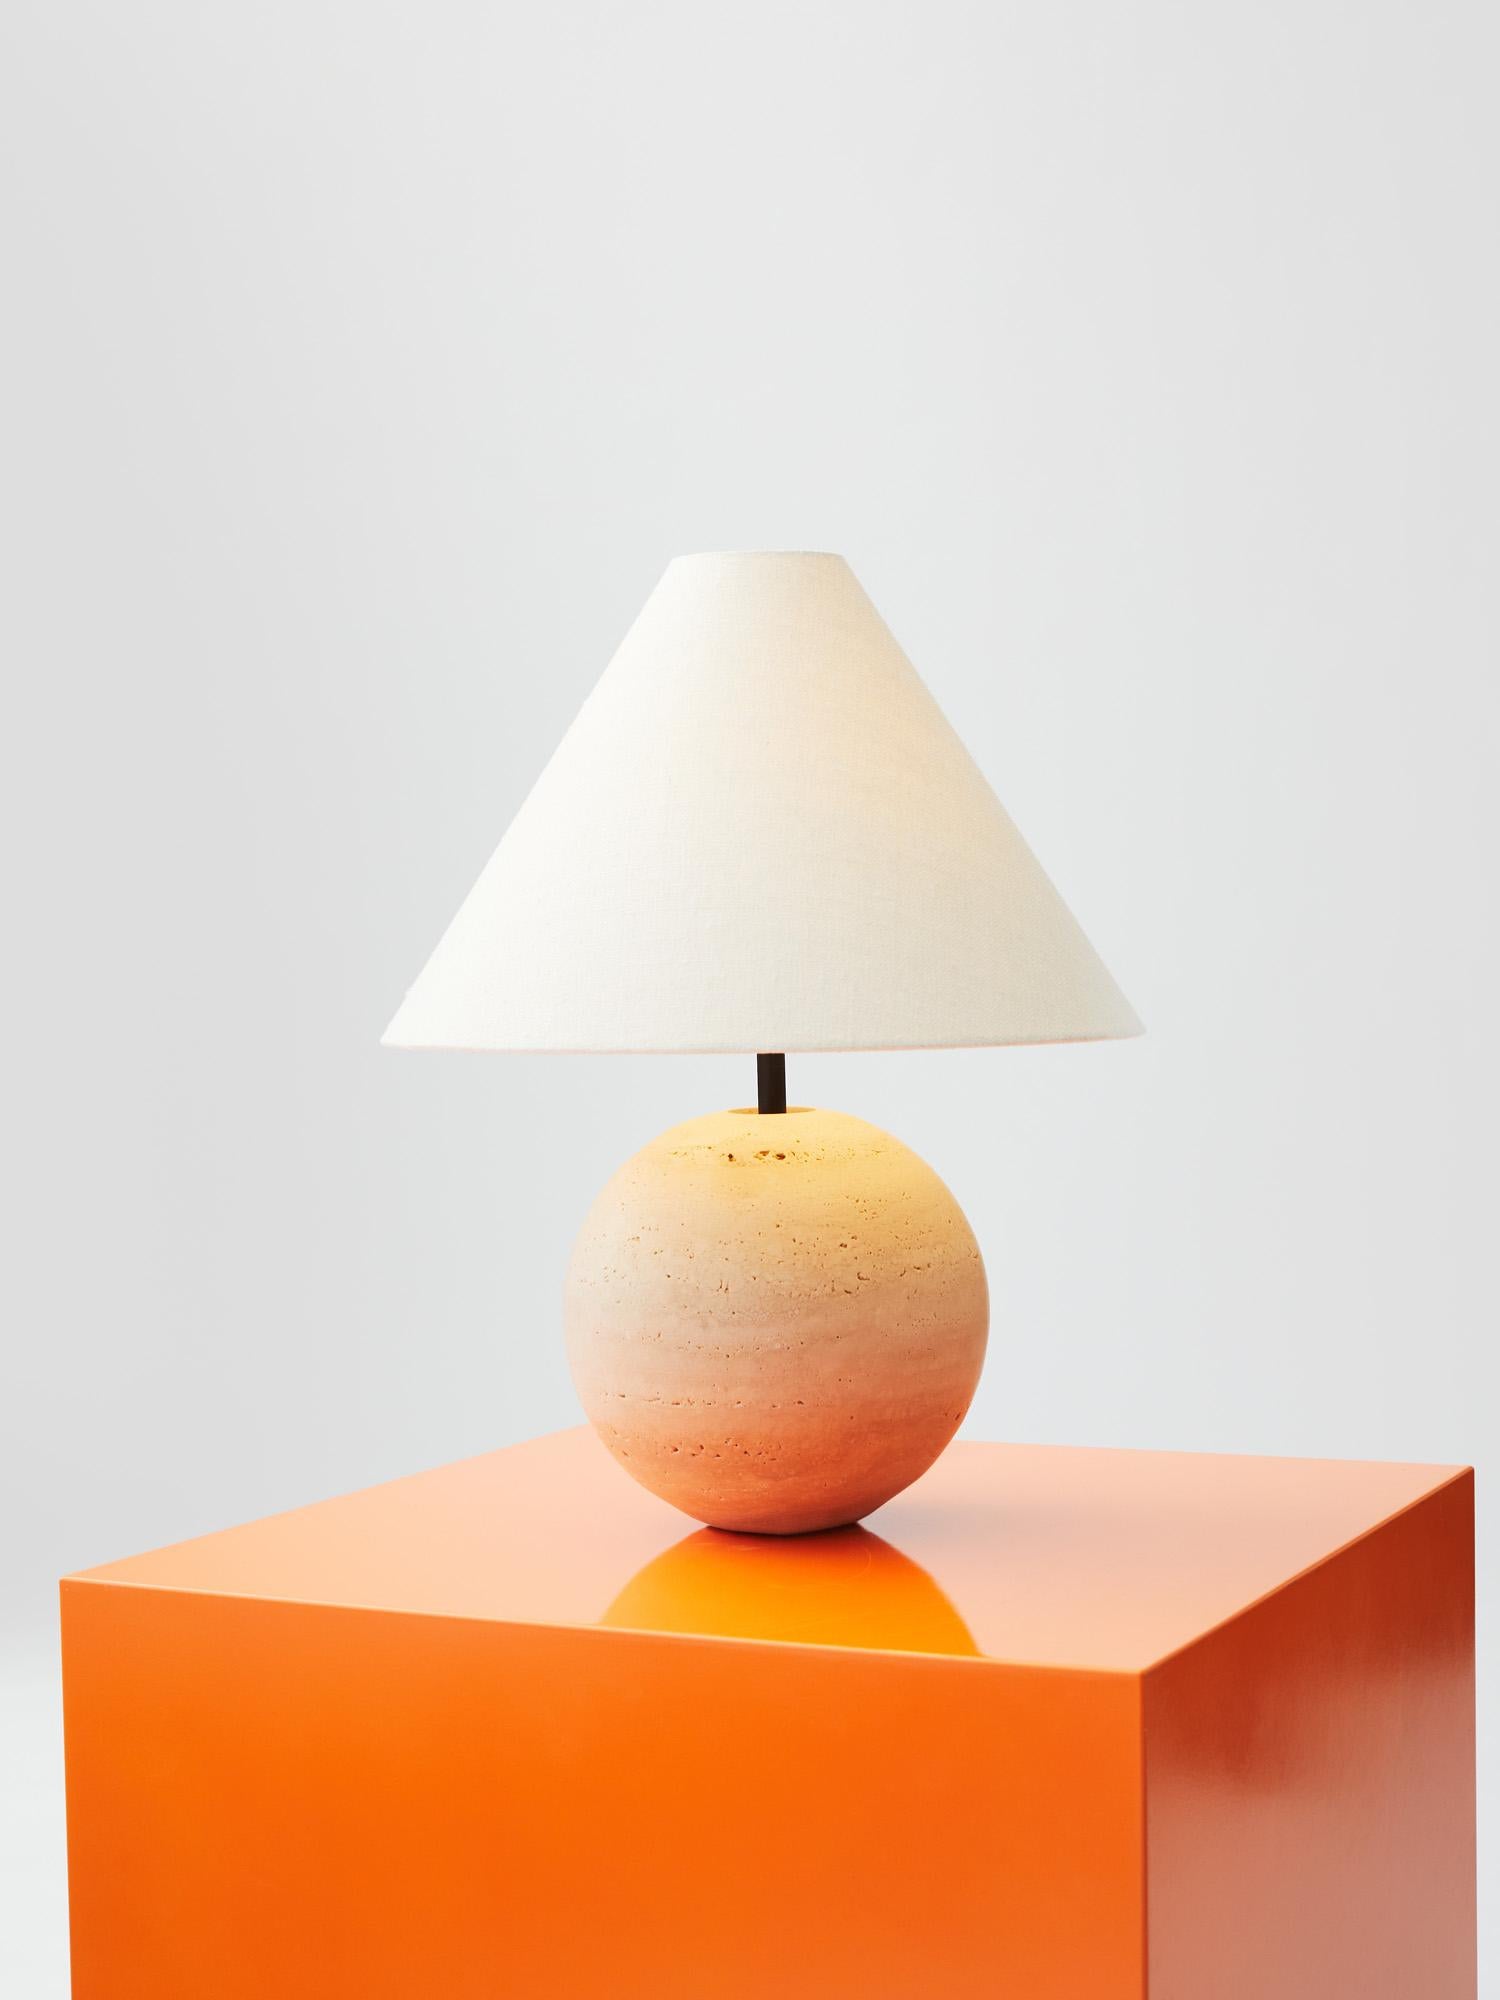 stone based lamp